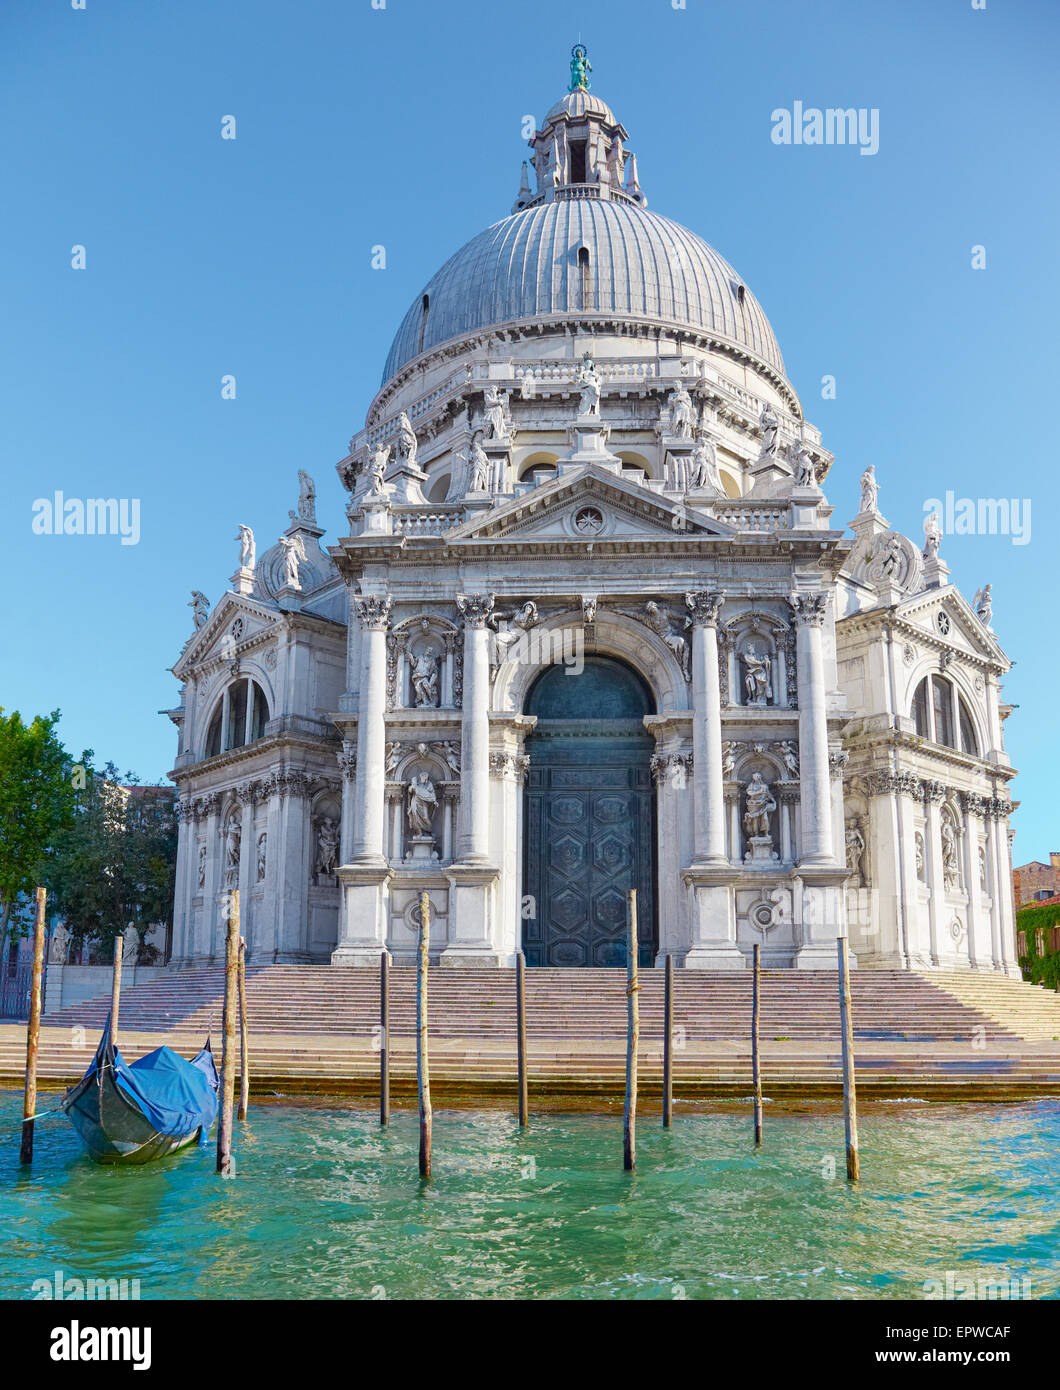 Basilica Santa Maria della Salute on embankment of Canal Grande in Venice, Italy Stock Photo